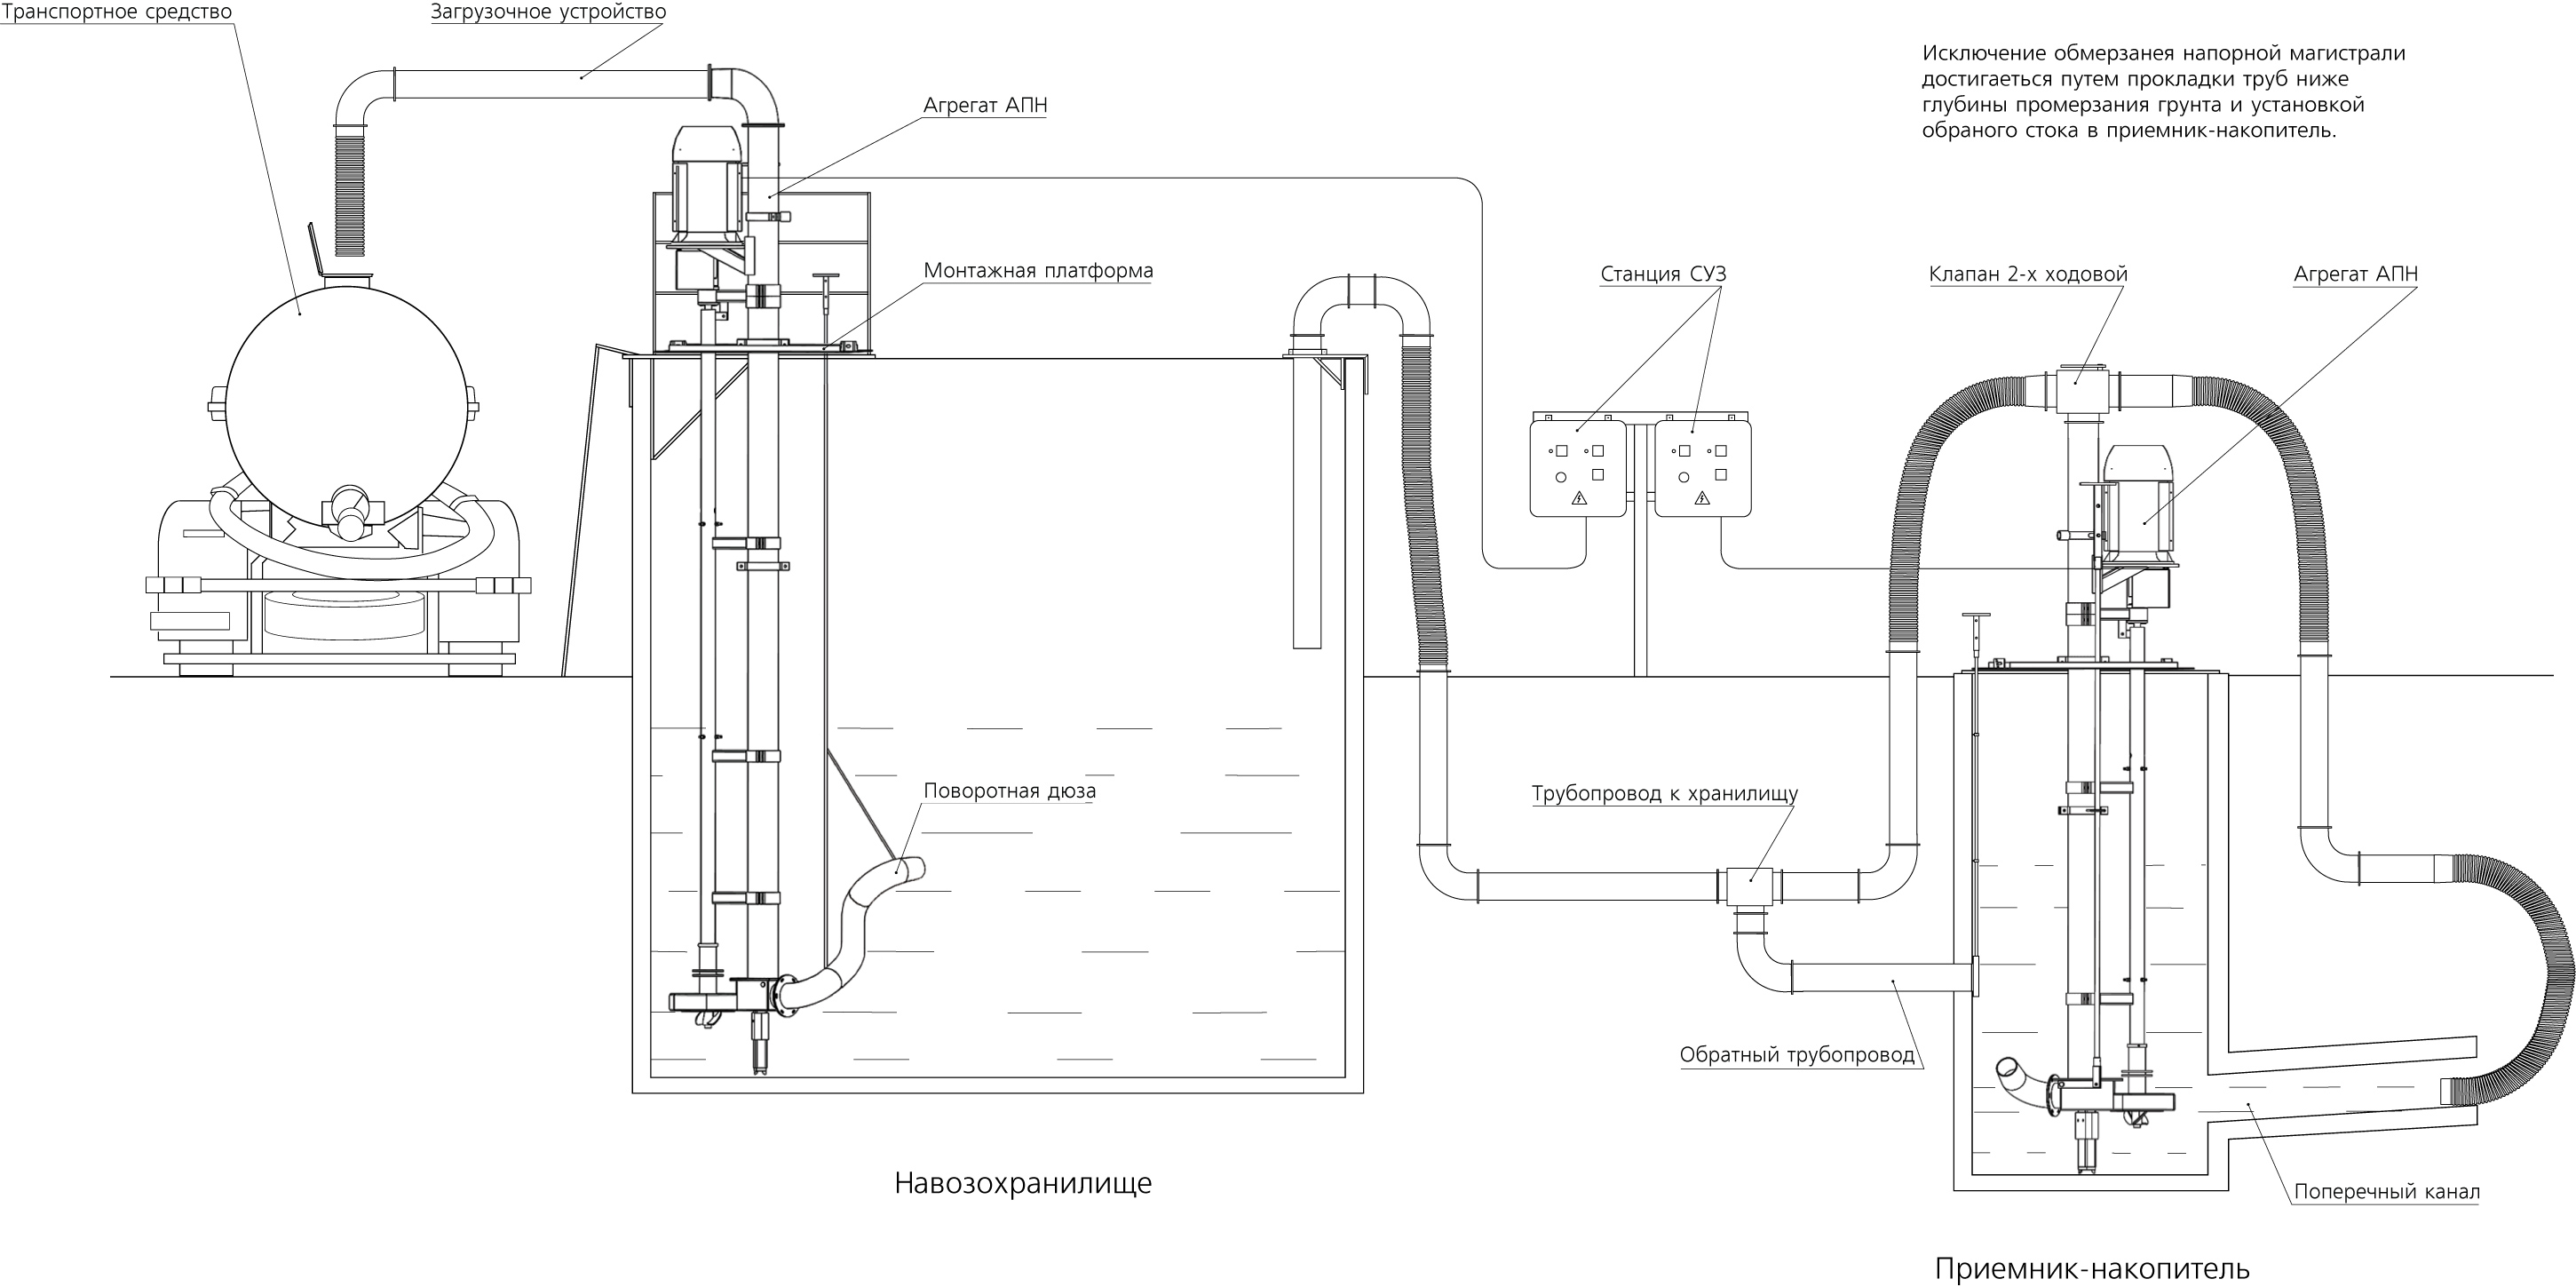 Схемы установки агрегатов АПН